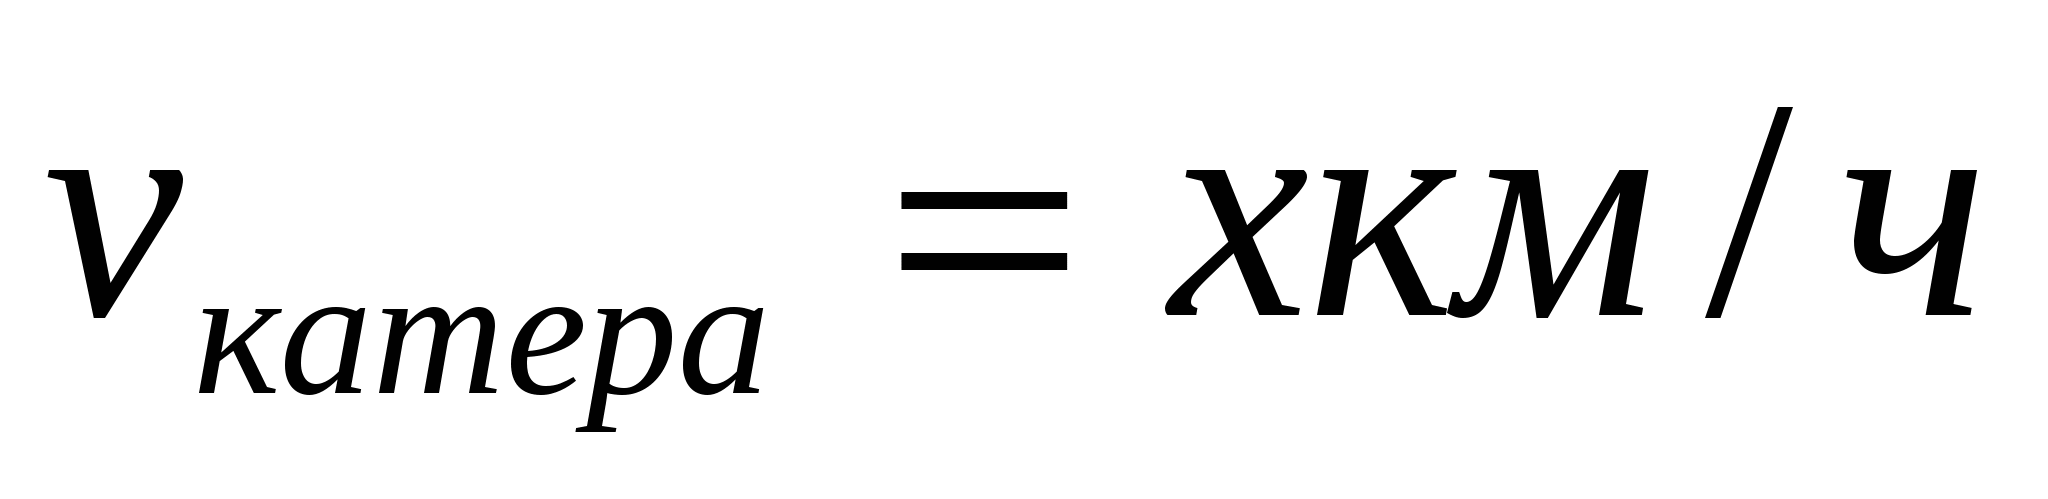 СПРАВОЧНЫЙ МАТЕРИАЛ по теме: «Уравнения, свойства уравнений. Решение задач с помощью уравнений» 6 класс